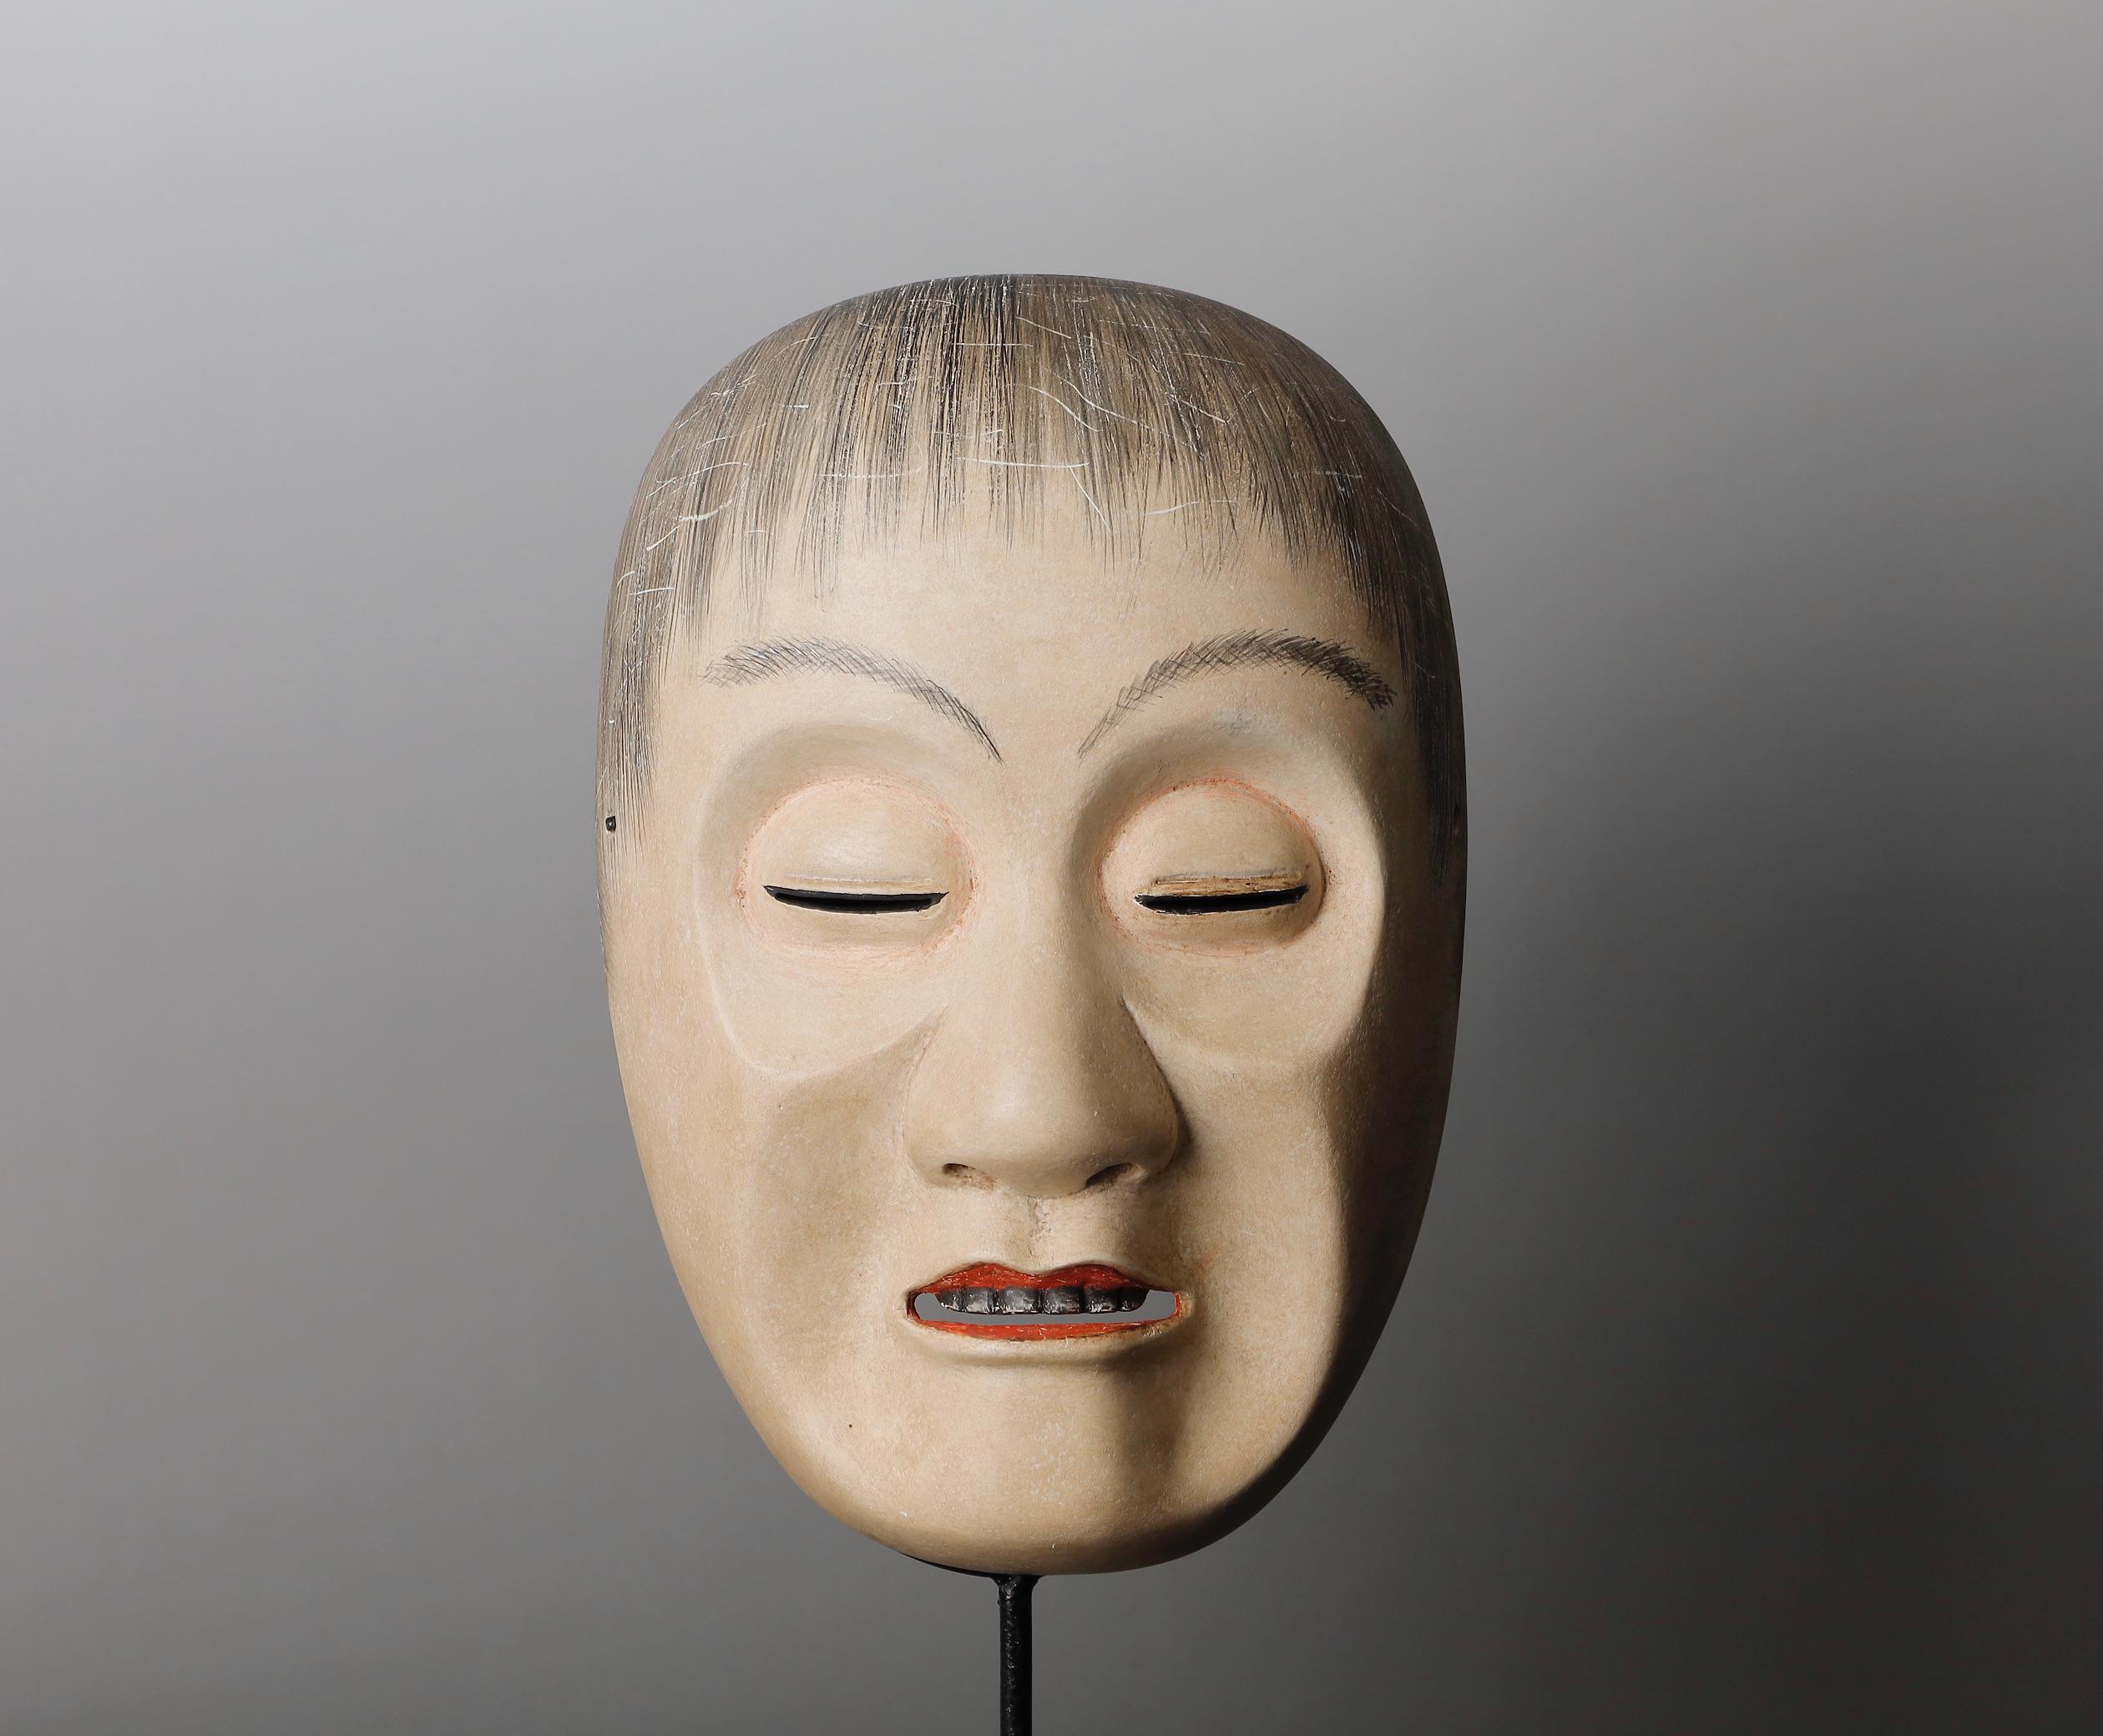 Japanische signierte Noh-Maske mit der Darstellung des Yoroboshi (Blinder Mönch)
Yoroboshi fängt die komplexen Emotionen von intensiver Trauer und spiritueller Befreiung ein. Hinter der schmerzhaften Verwirrung, die die Maske an der Oberfläche zum